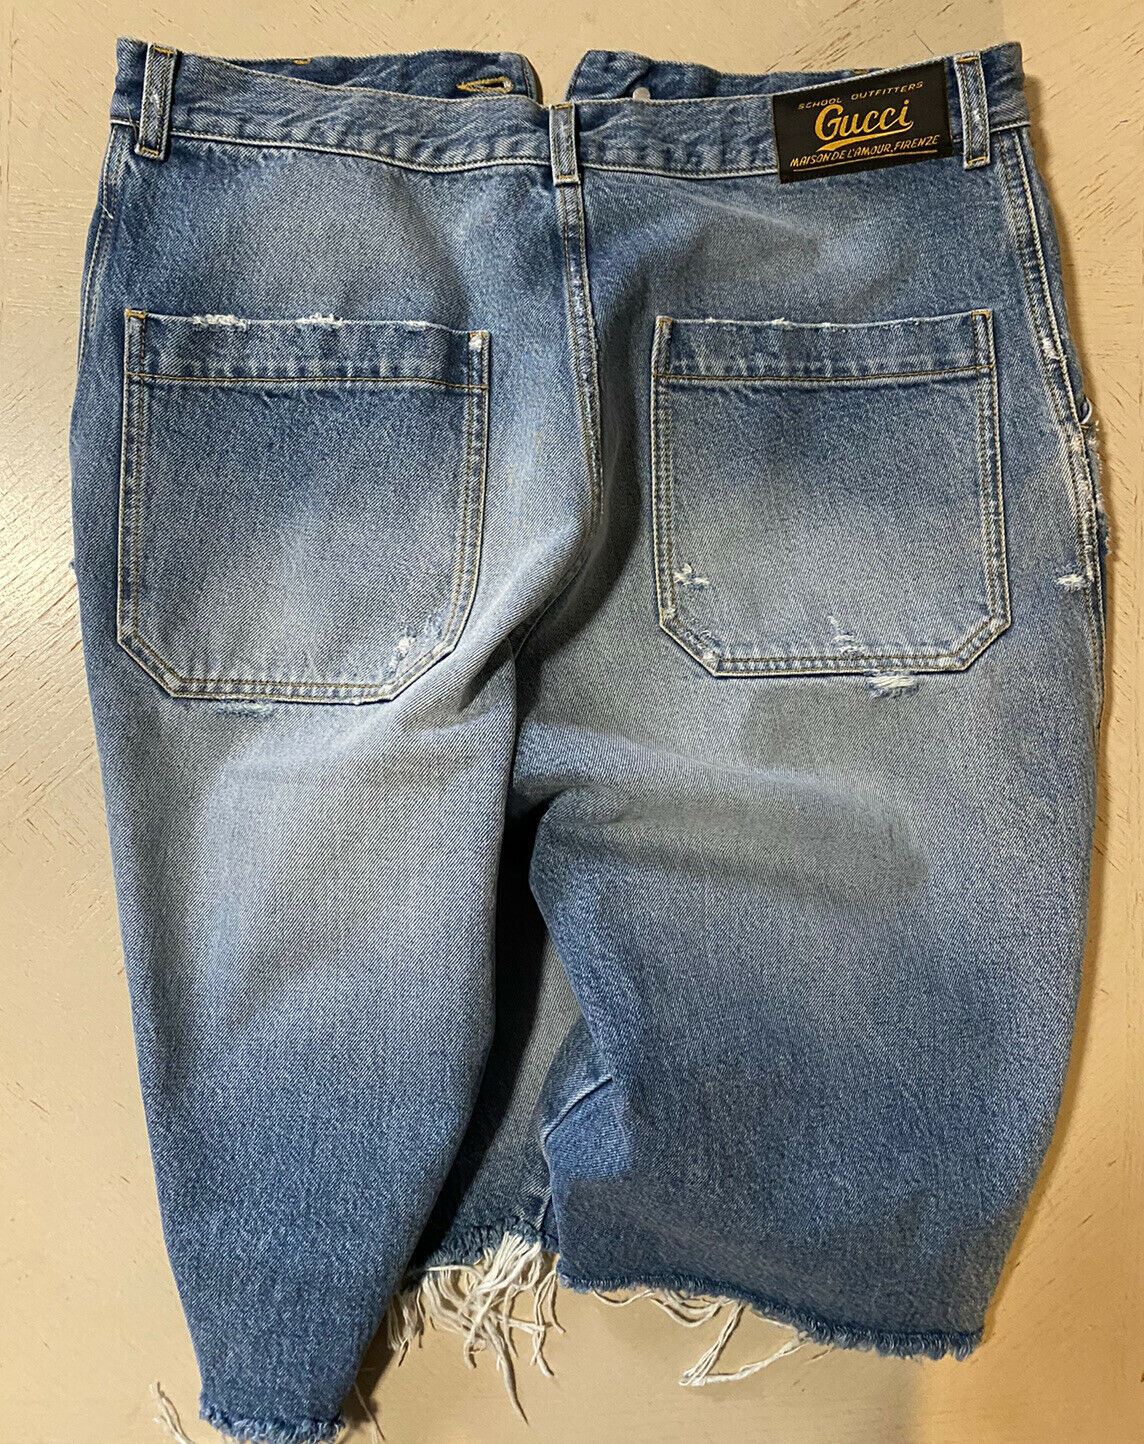 Neu mit Etikett: 1.500 $ Gucci kurze Jeanshose für Herren, blau, Größe 30 US/44 Eu